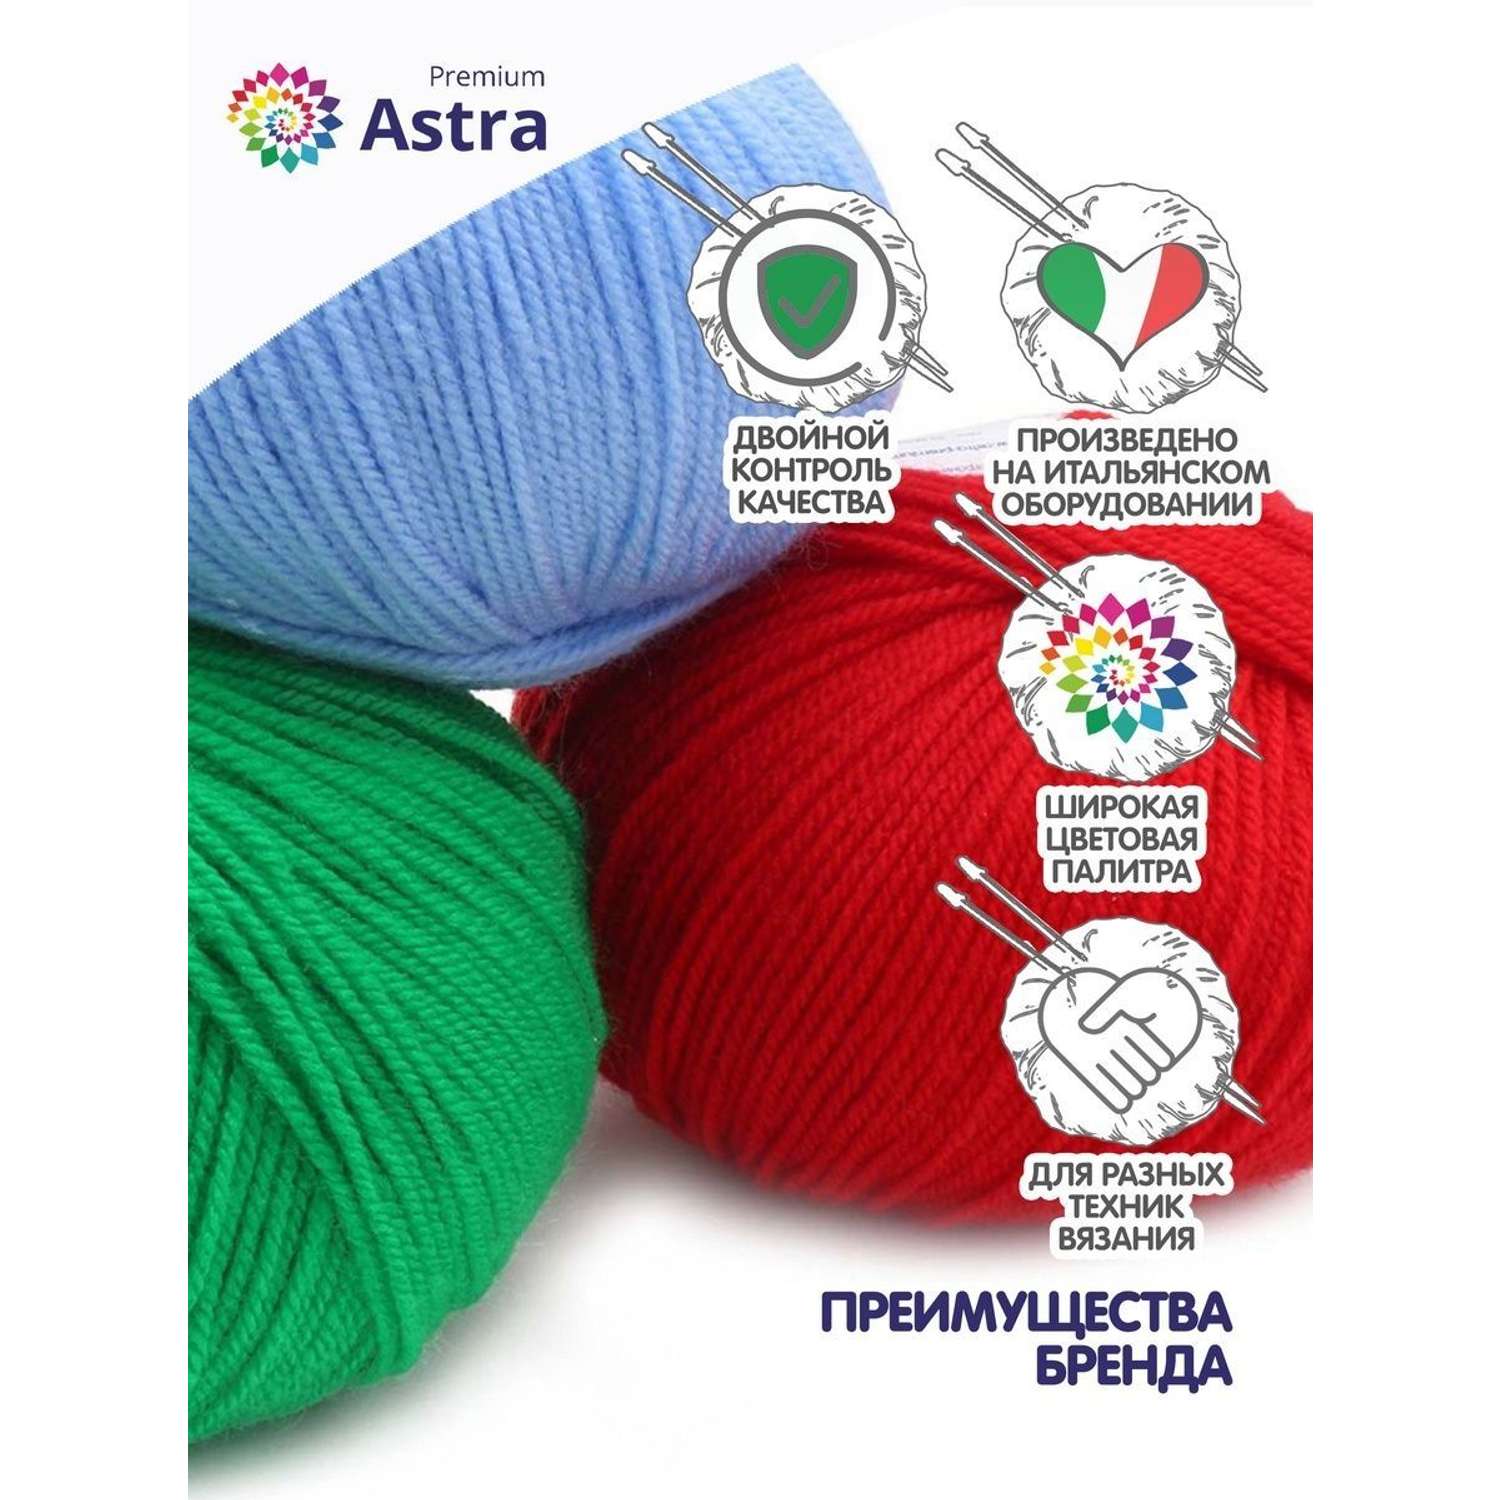 Пряжа для вязания Astra Premium амигуруми акрил для мягких игрушек 50 гр 175 м 170 арахис 6 мотков - фото 3